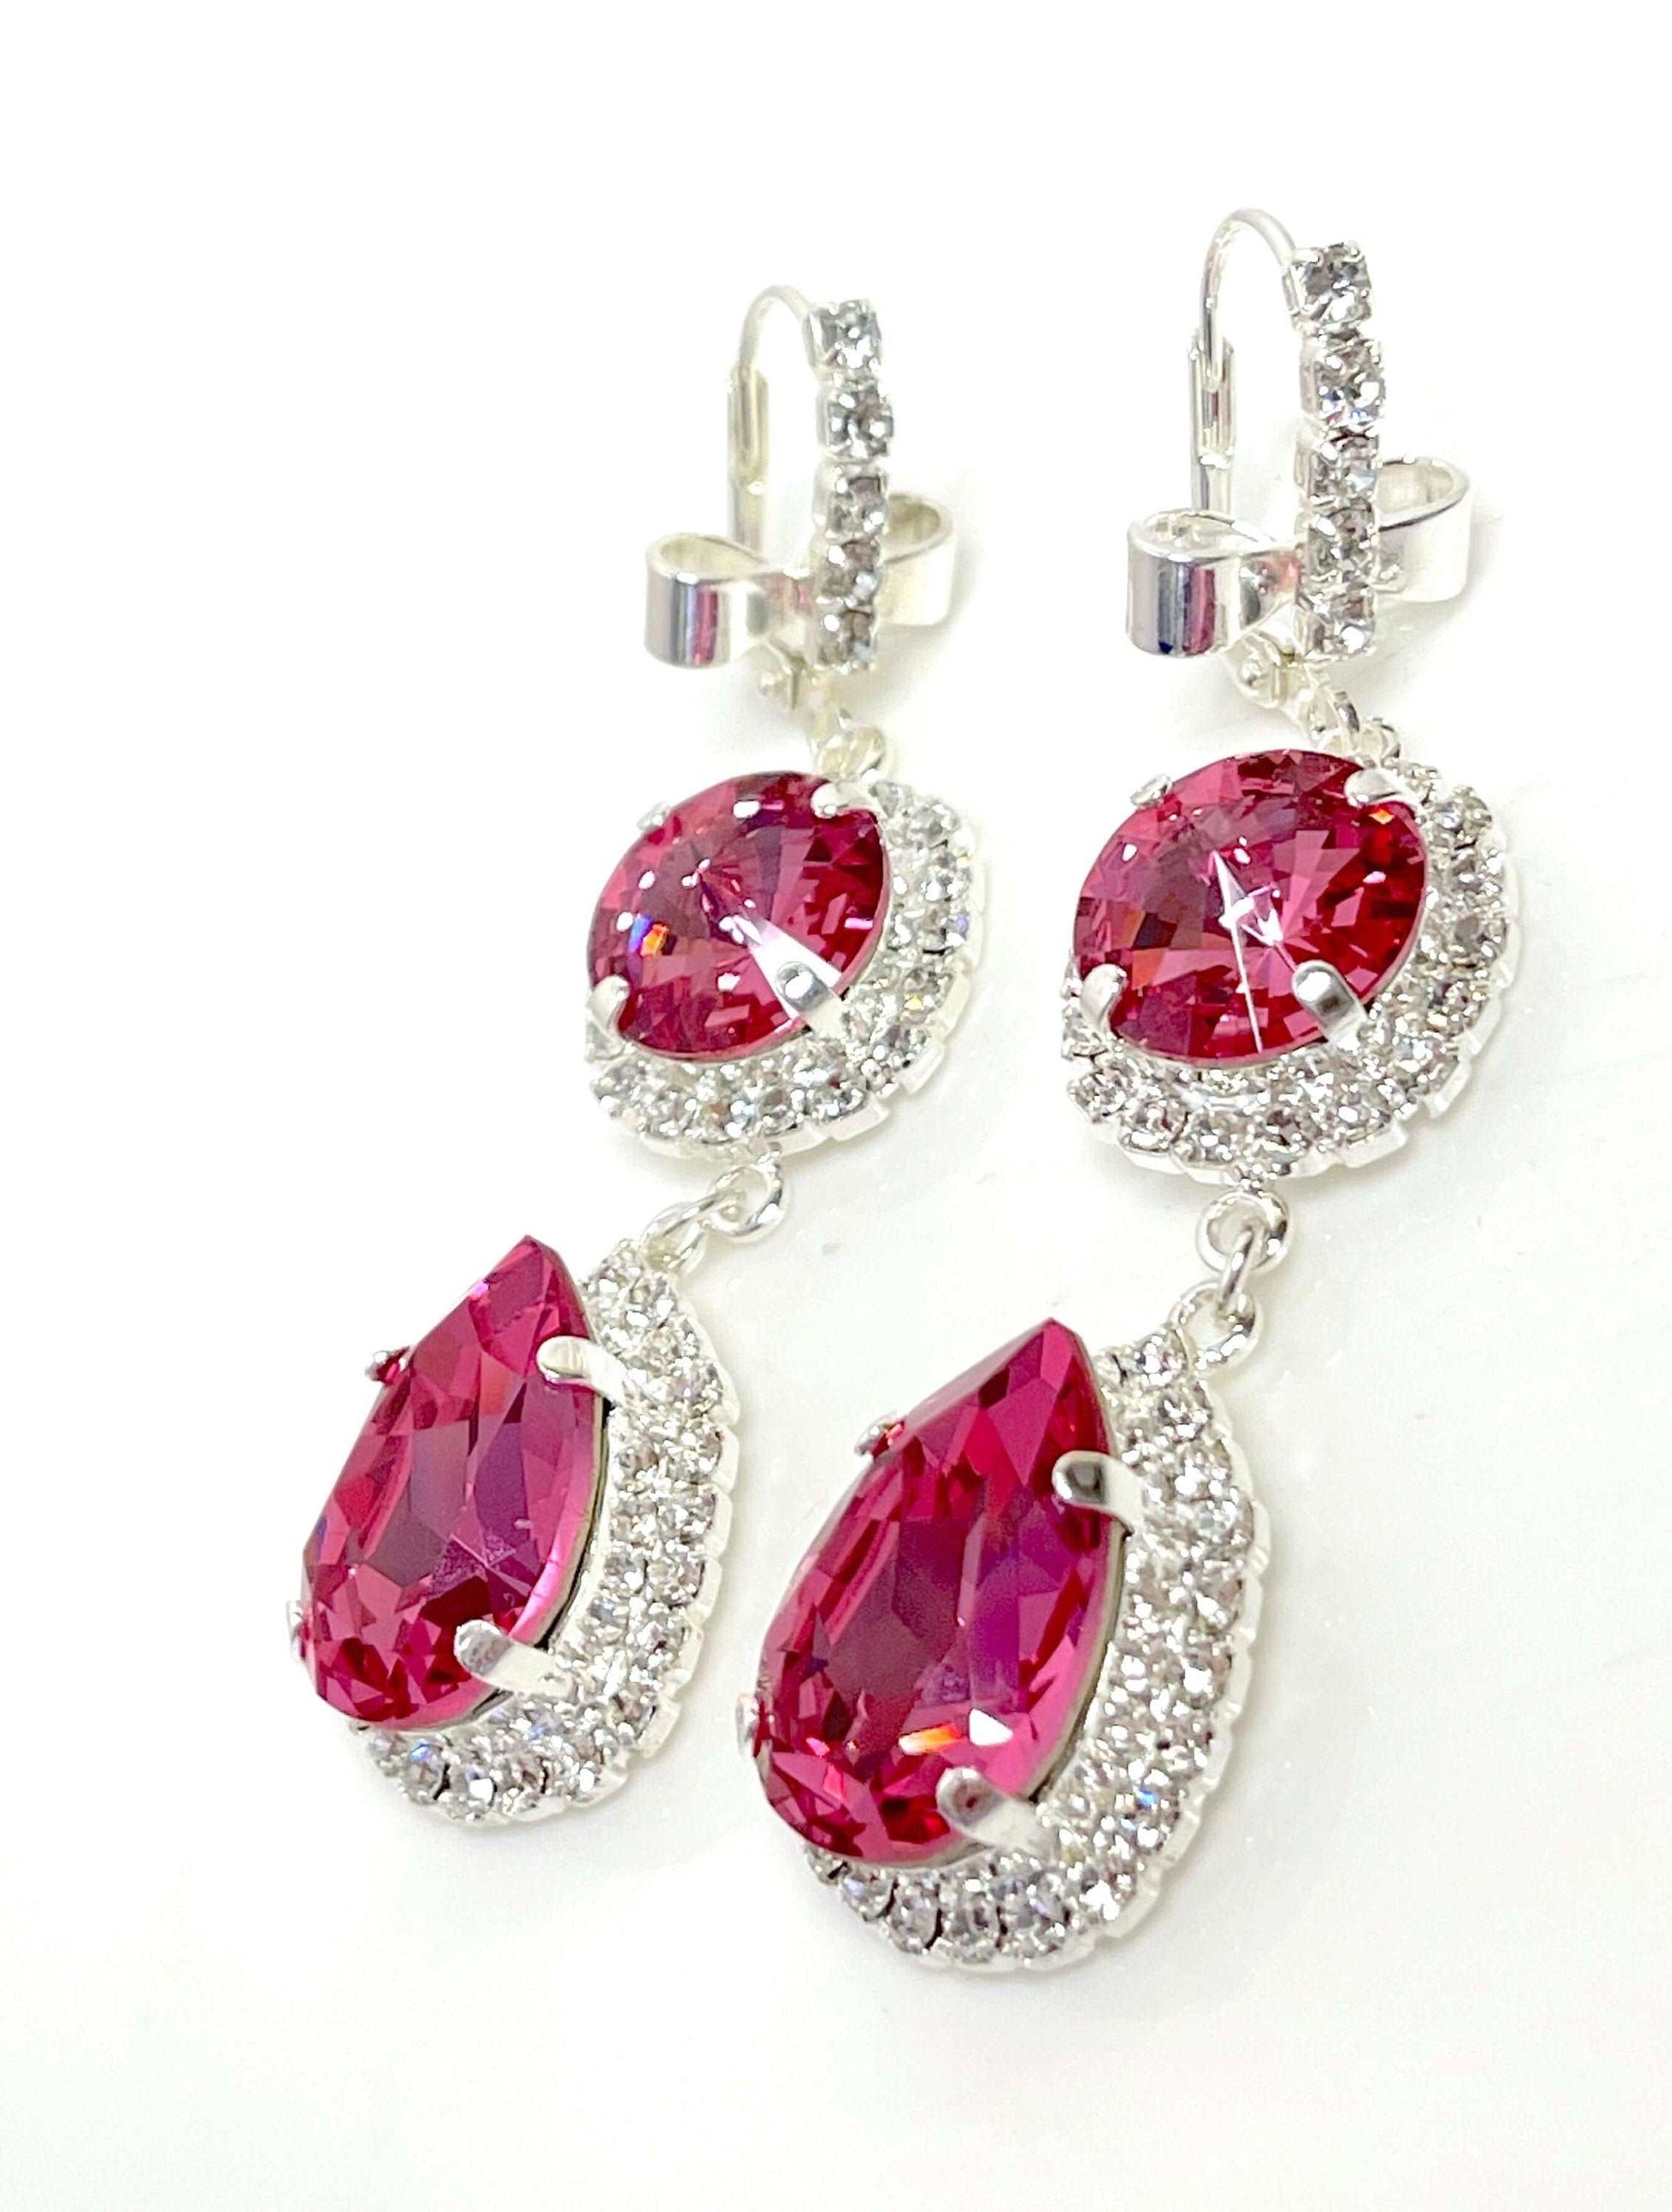 Rose Pink Crystal Earrings | Vintage Style Georgian Collet | Teardrop Statement Drops